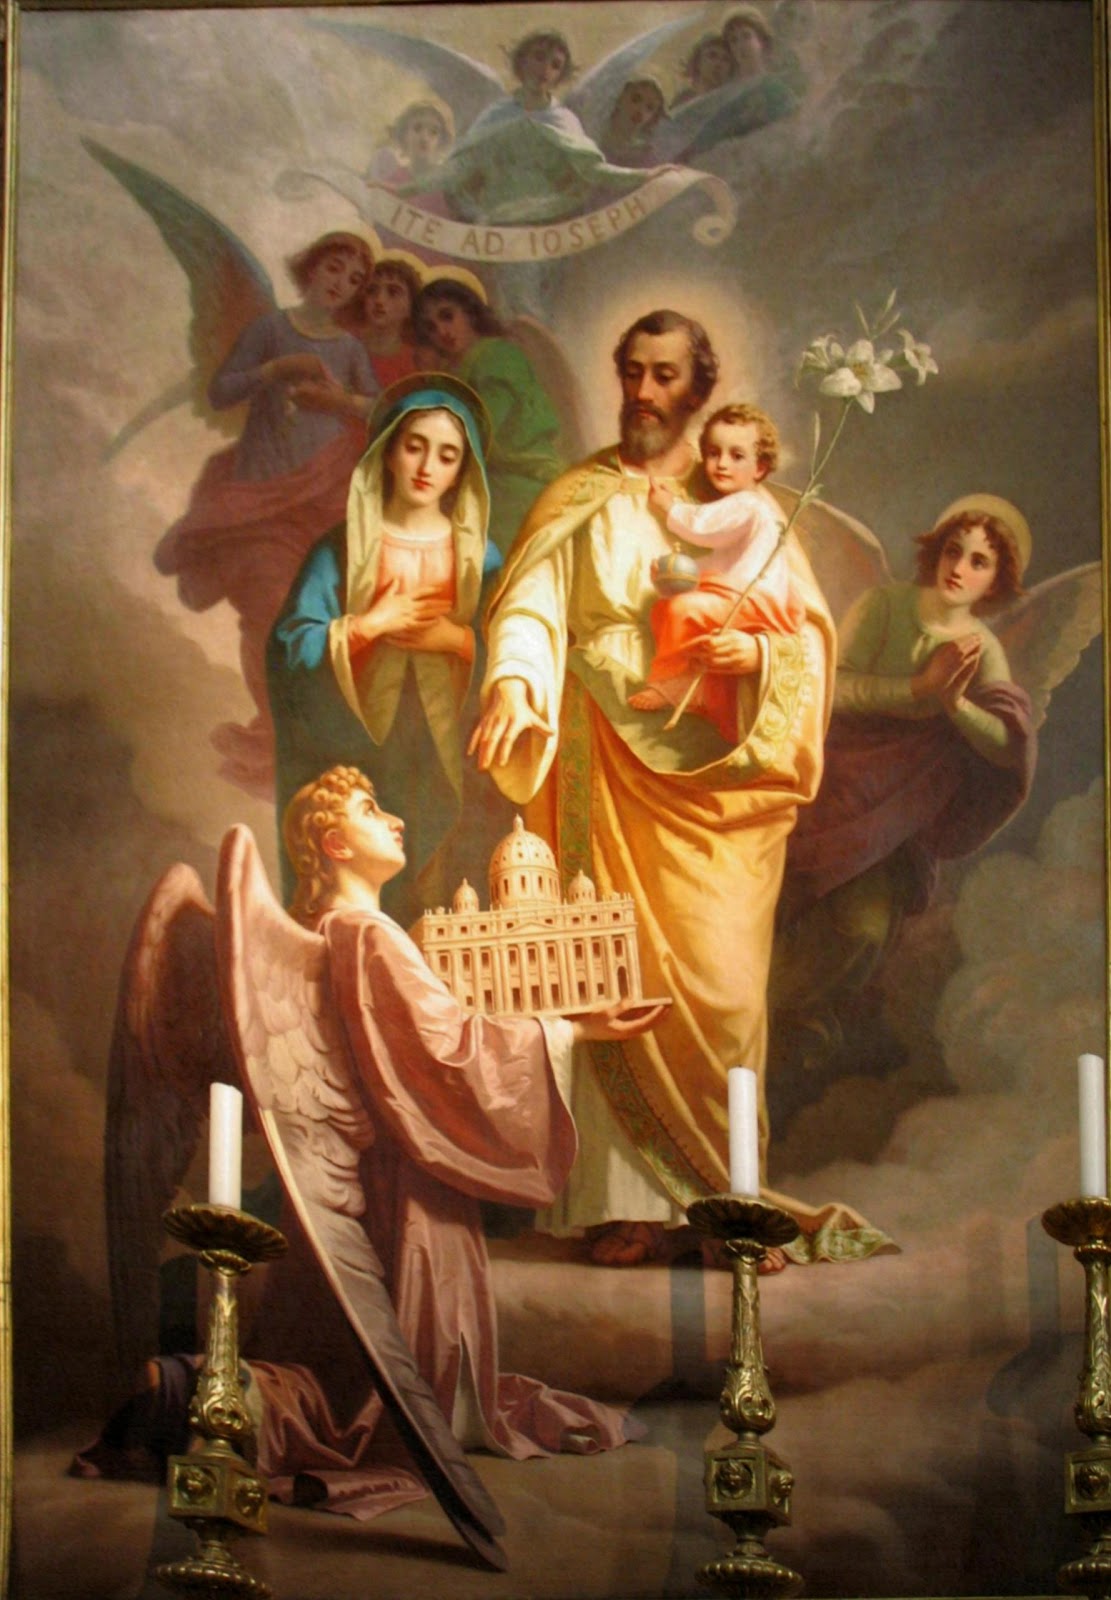 La tela di San Giuseppe nella Basilica del Sacro Cuore, opera di G. Rollini